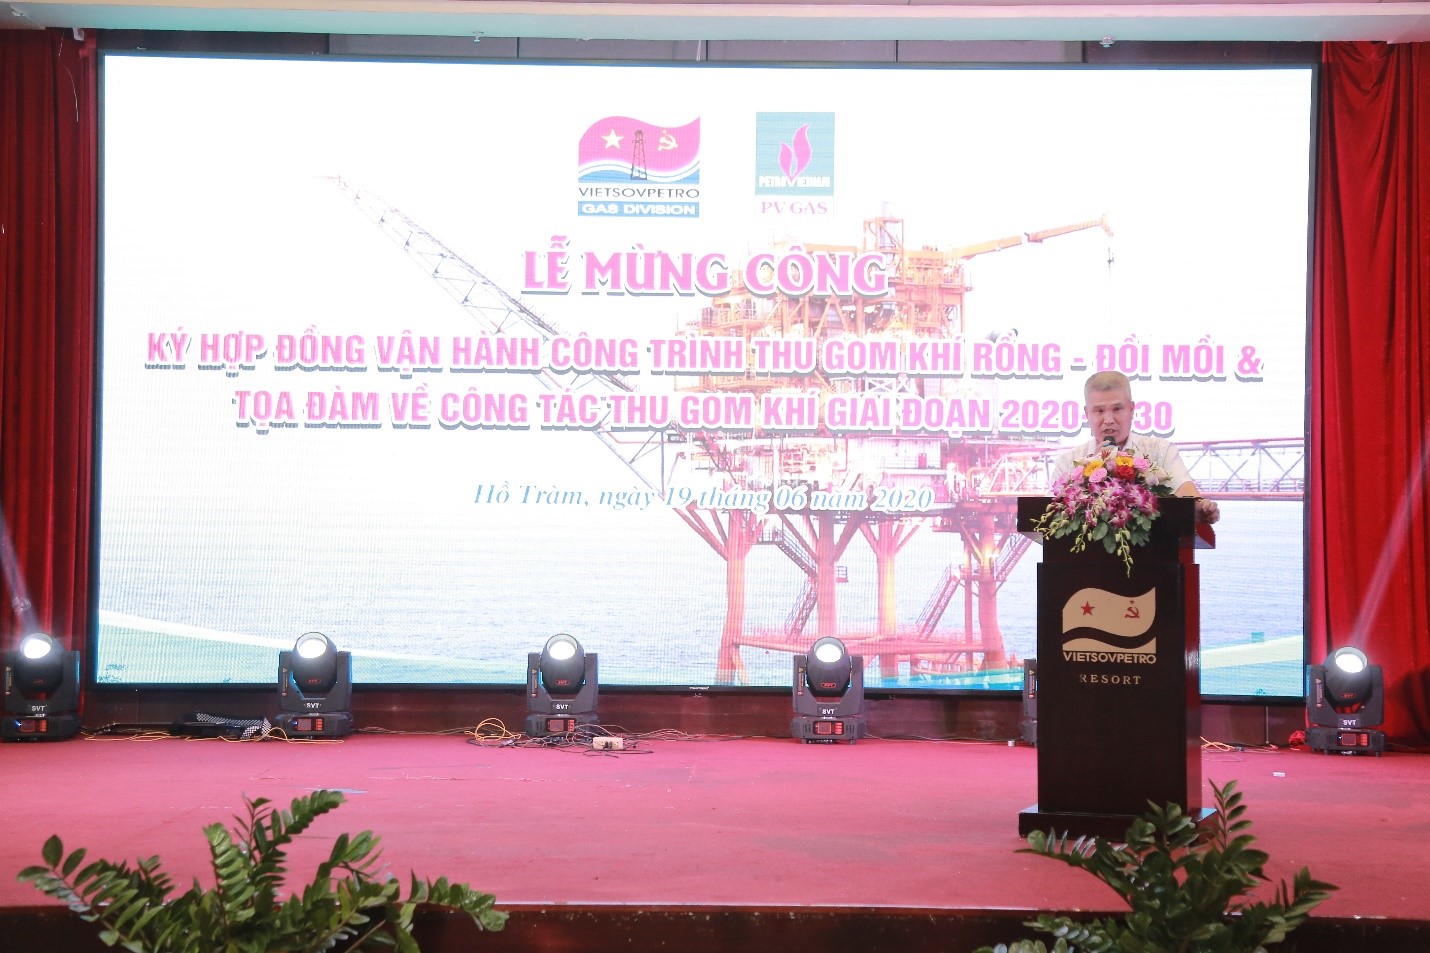 Đồng chí Nguyễn Anh Phong Giám đốc XN Khí phát biểu tại Lễ mừng công.jpg